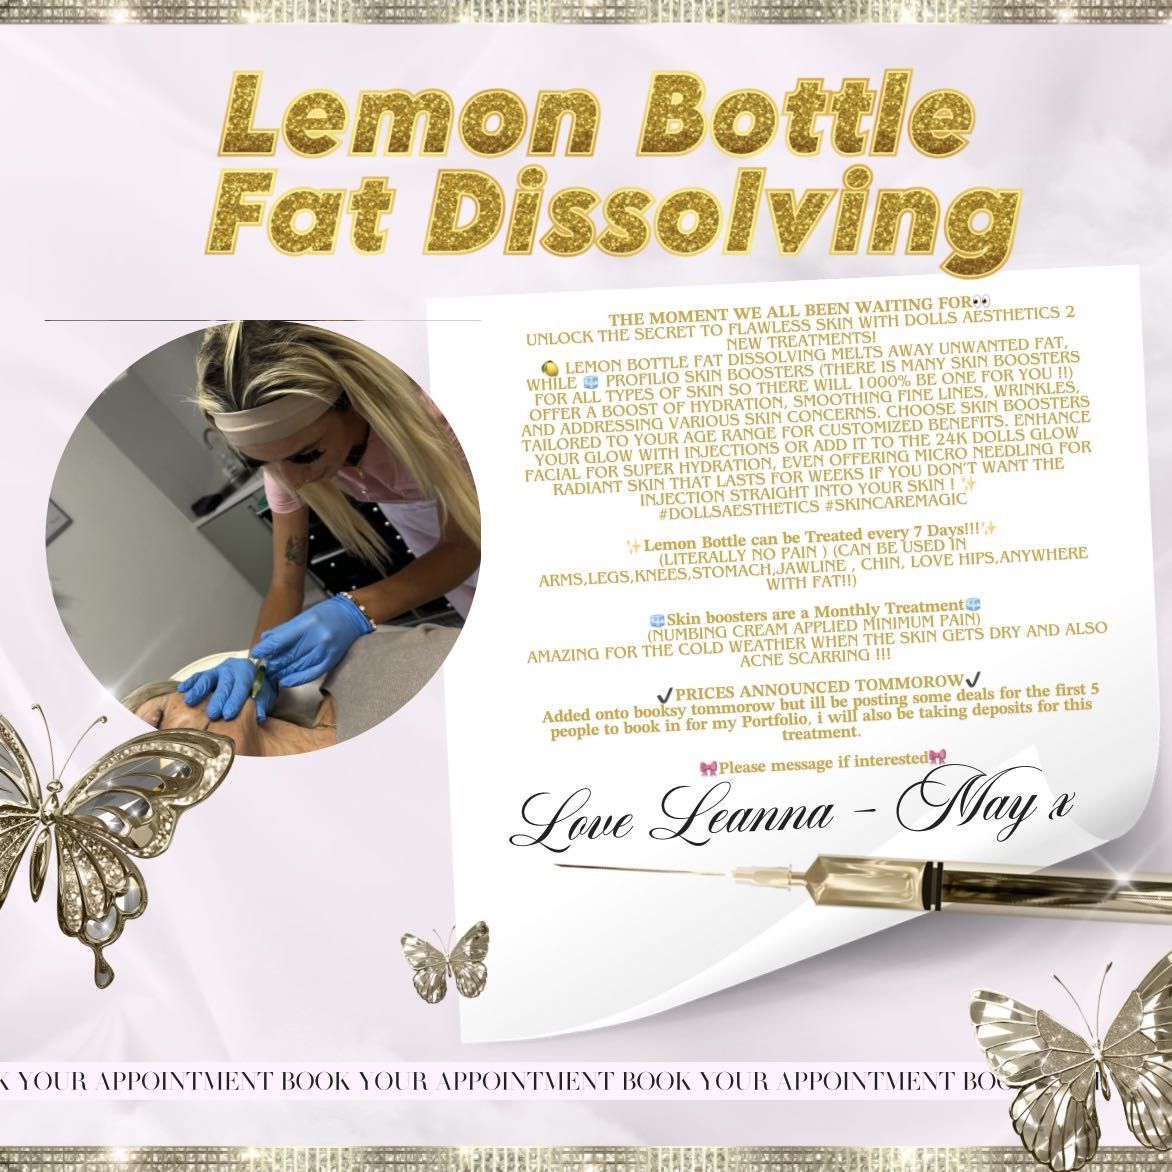 Lemon Bottle medium Area🍋 portfolio